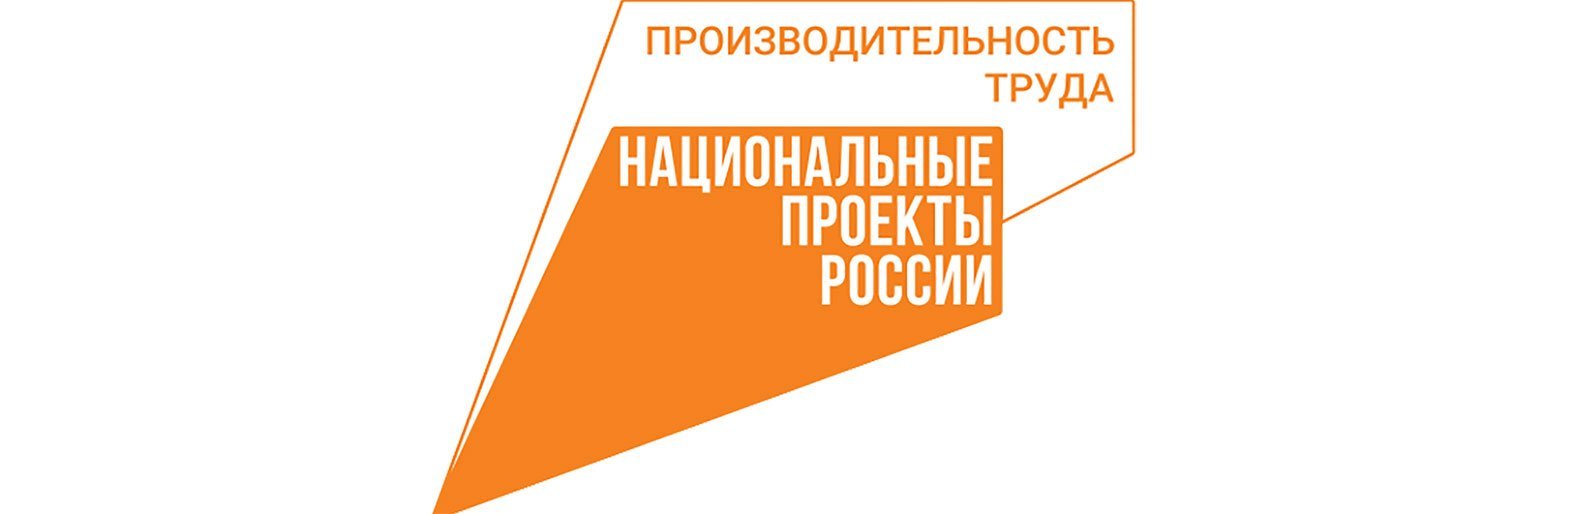 Белгородский производитель систем очистки воды участвует в нацпроекте «Производительность труда»